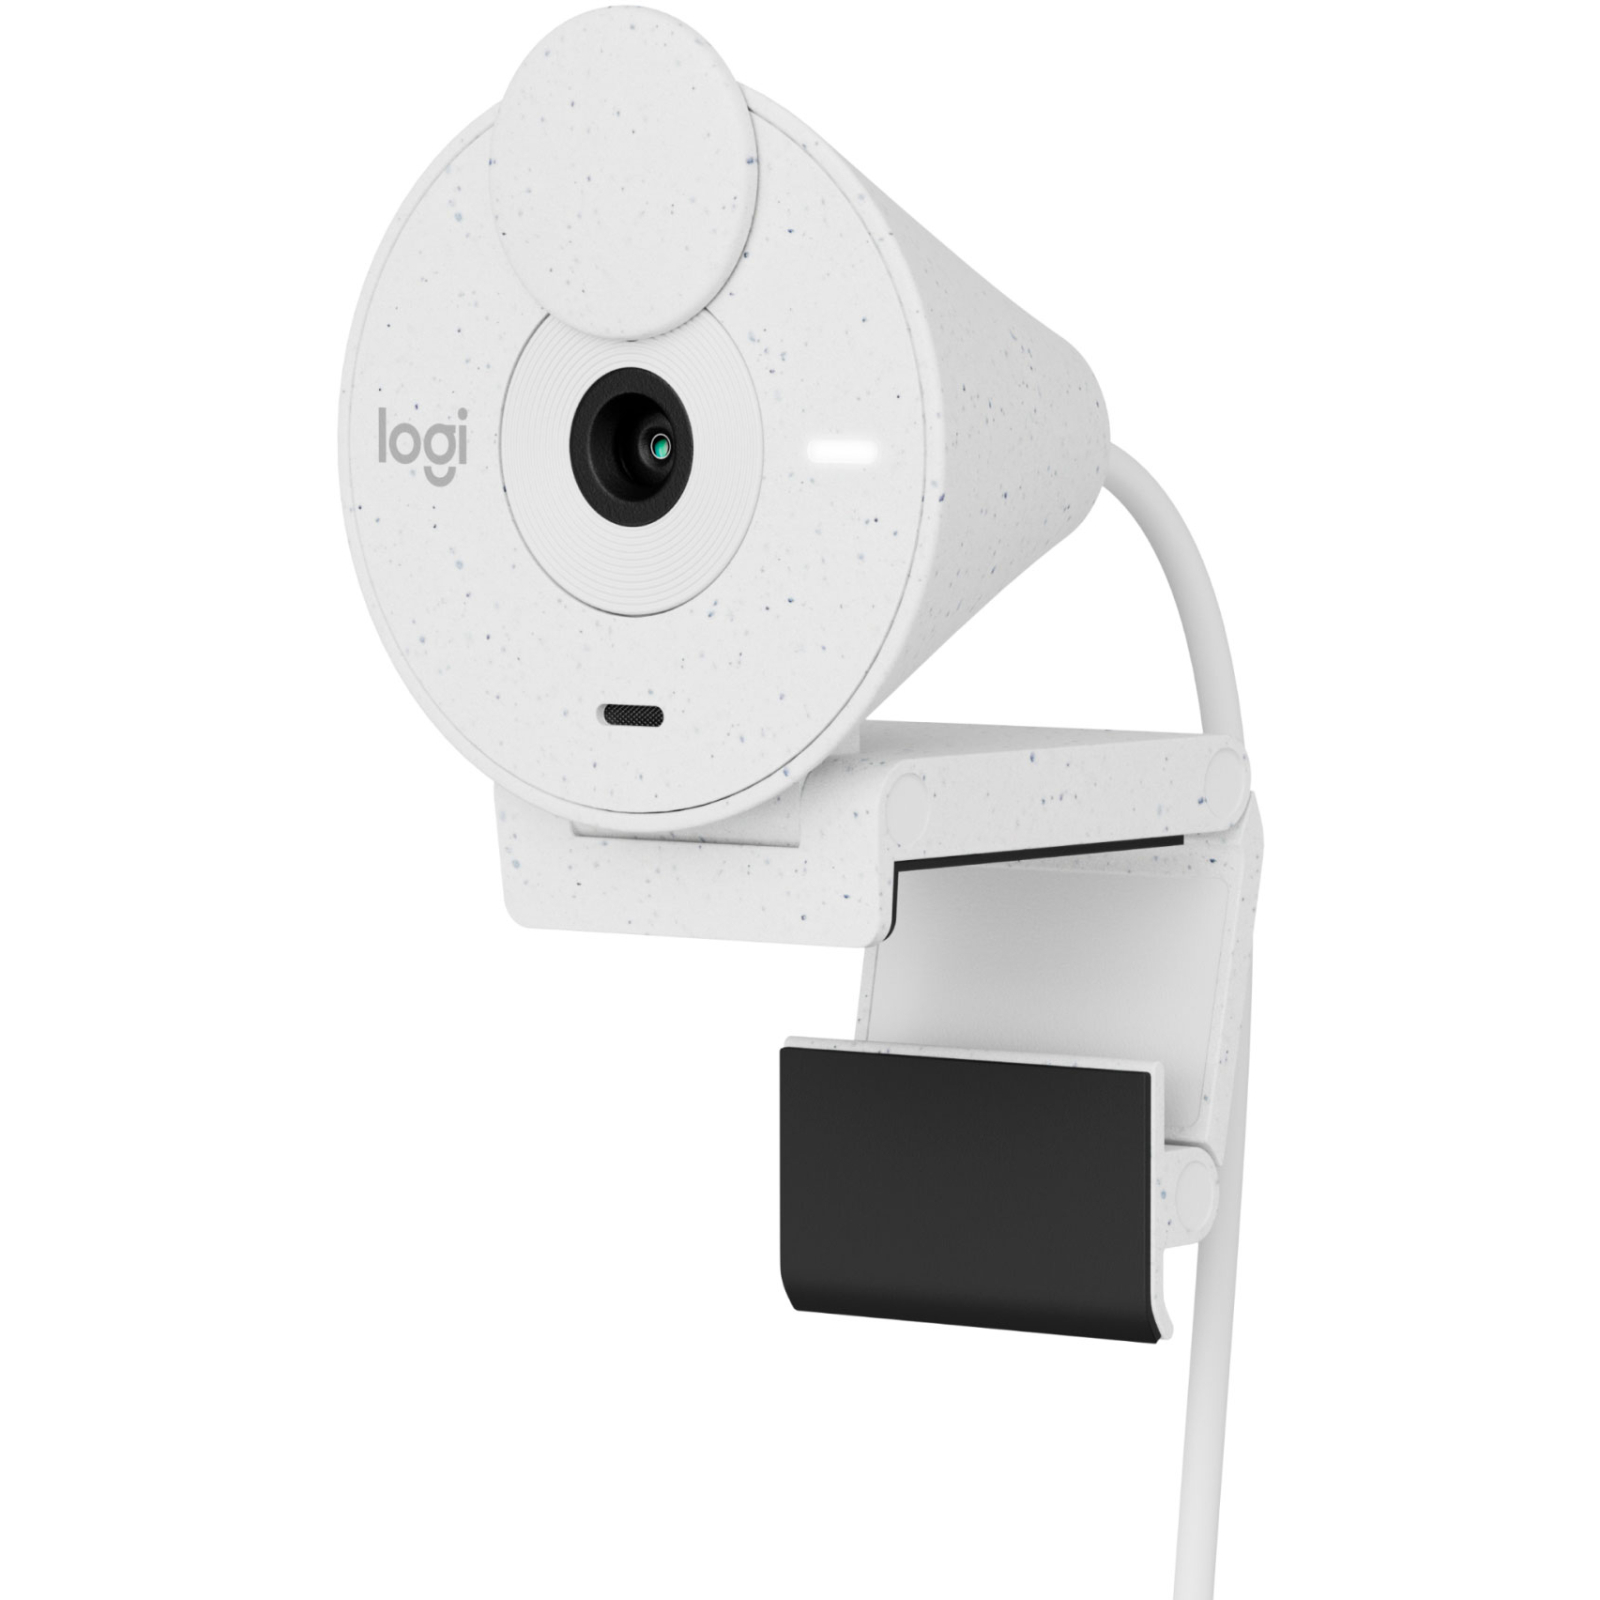 Веб-камера Logitech Brio 300 FHD Rose (960-001448)